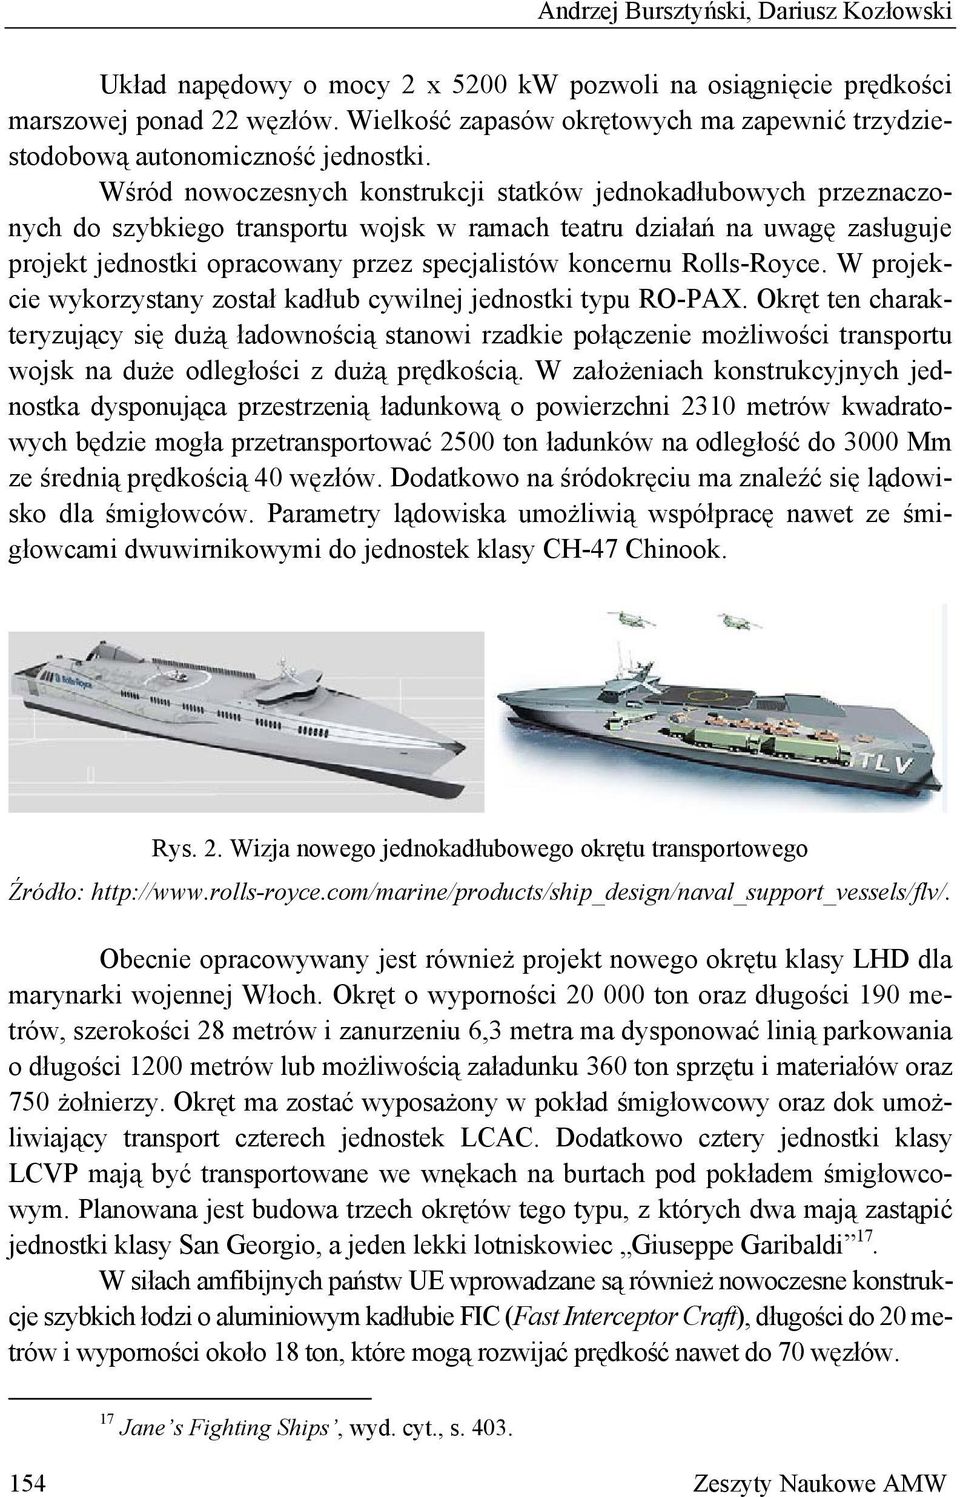 Wśród nowoczesnych konstrukcji statków jednokadłubowych przeznaczonych do szybkiego transportu wojsk w ramach teatru działań na uwagę zasługuje projekt jednostki opracowany przez specjalistów